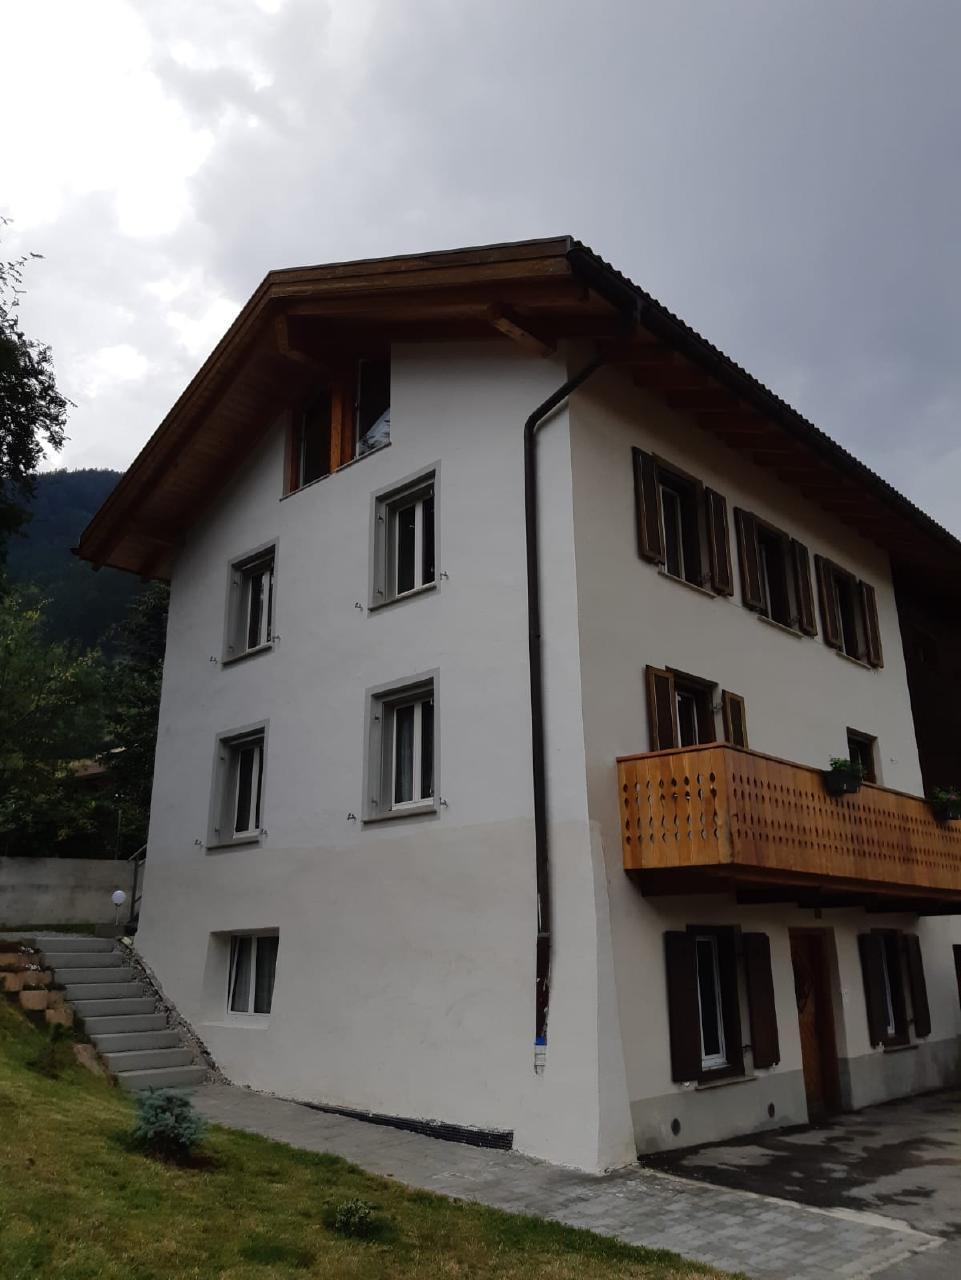 Wohnen im alten Bauernhaus,Wohnung EG Ferienwohnung in der Schweiz